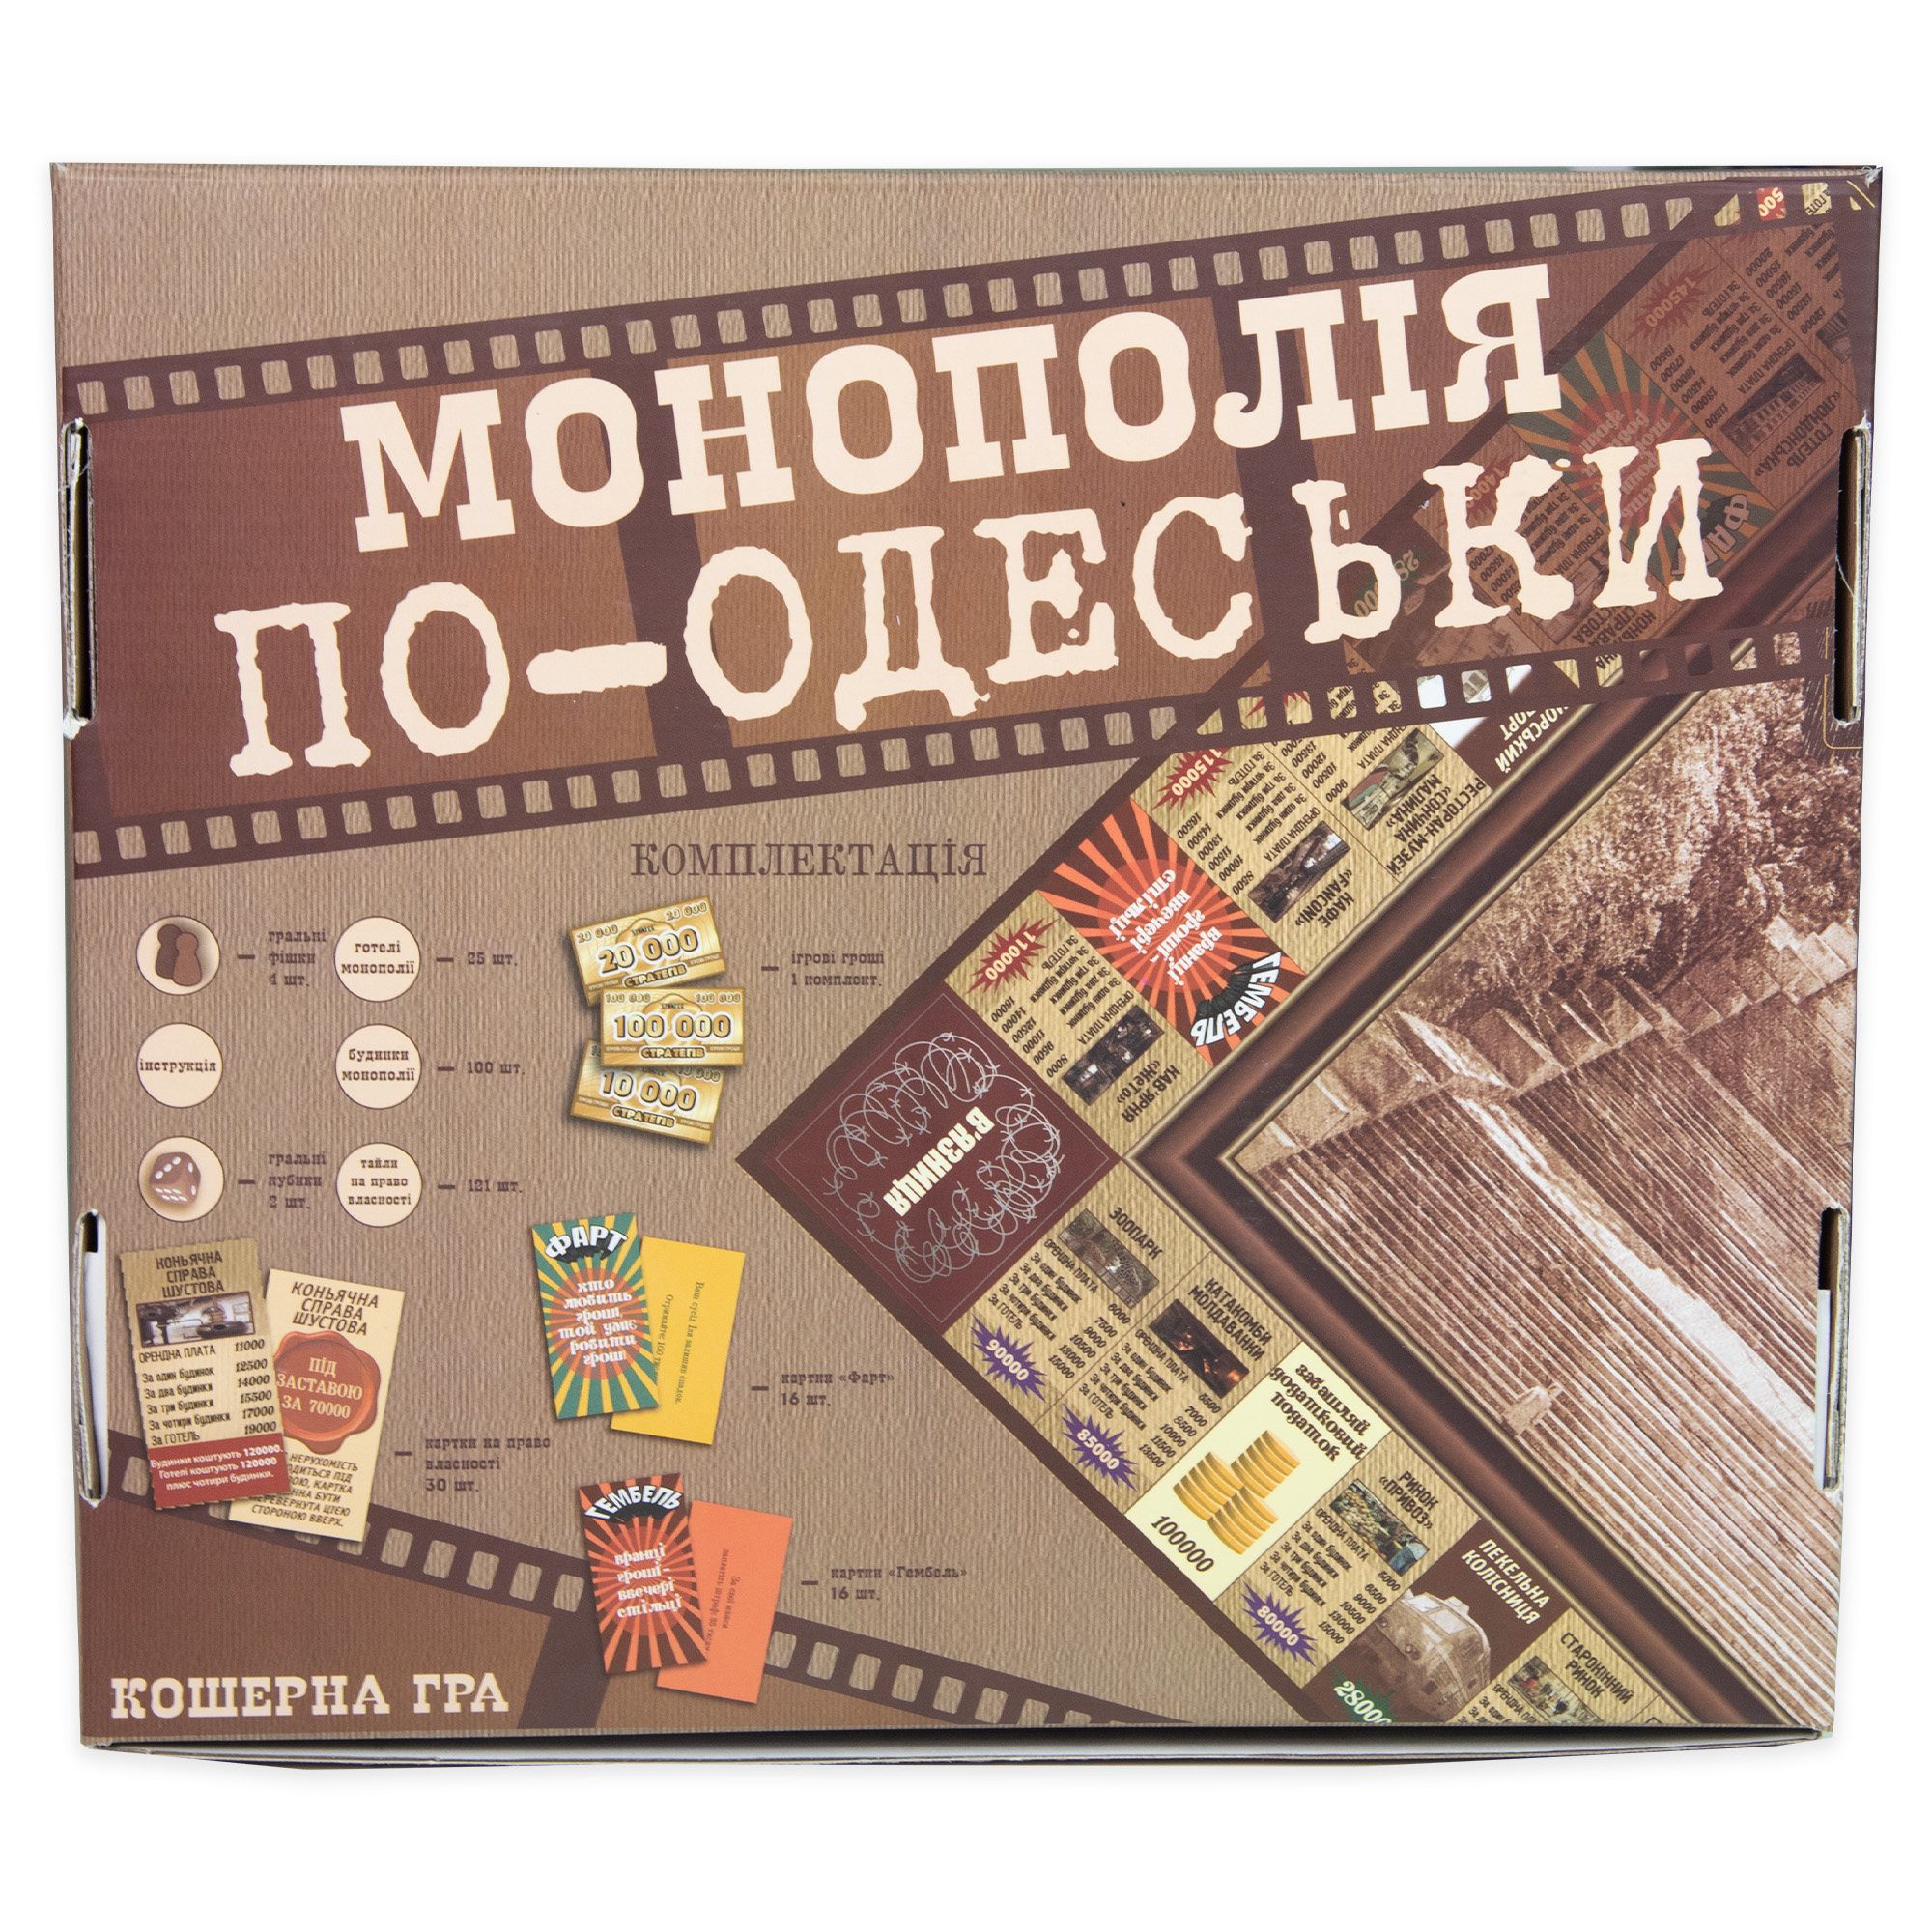 Brettspiel Strateg Monopoly in Odessa auf Ukrainisch 30318